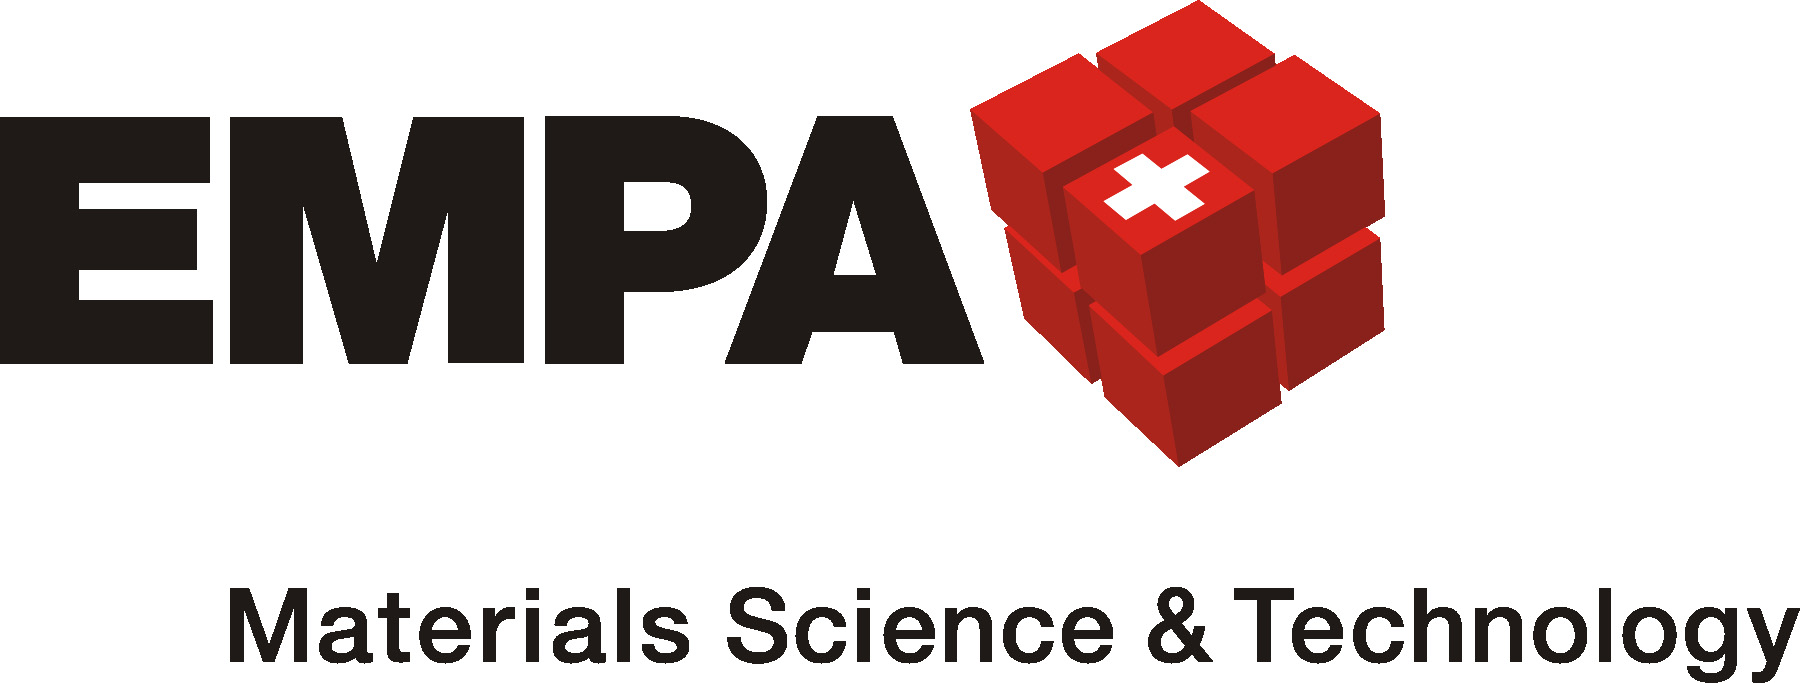 Empa Logo photo - 1